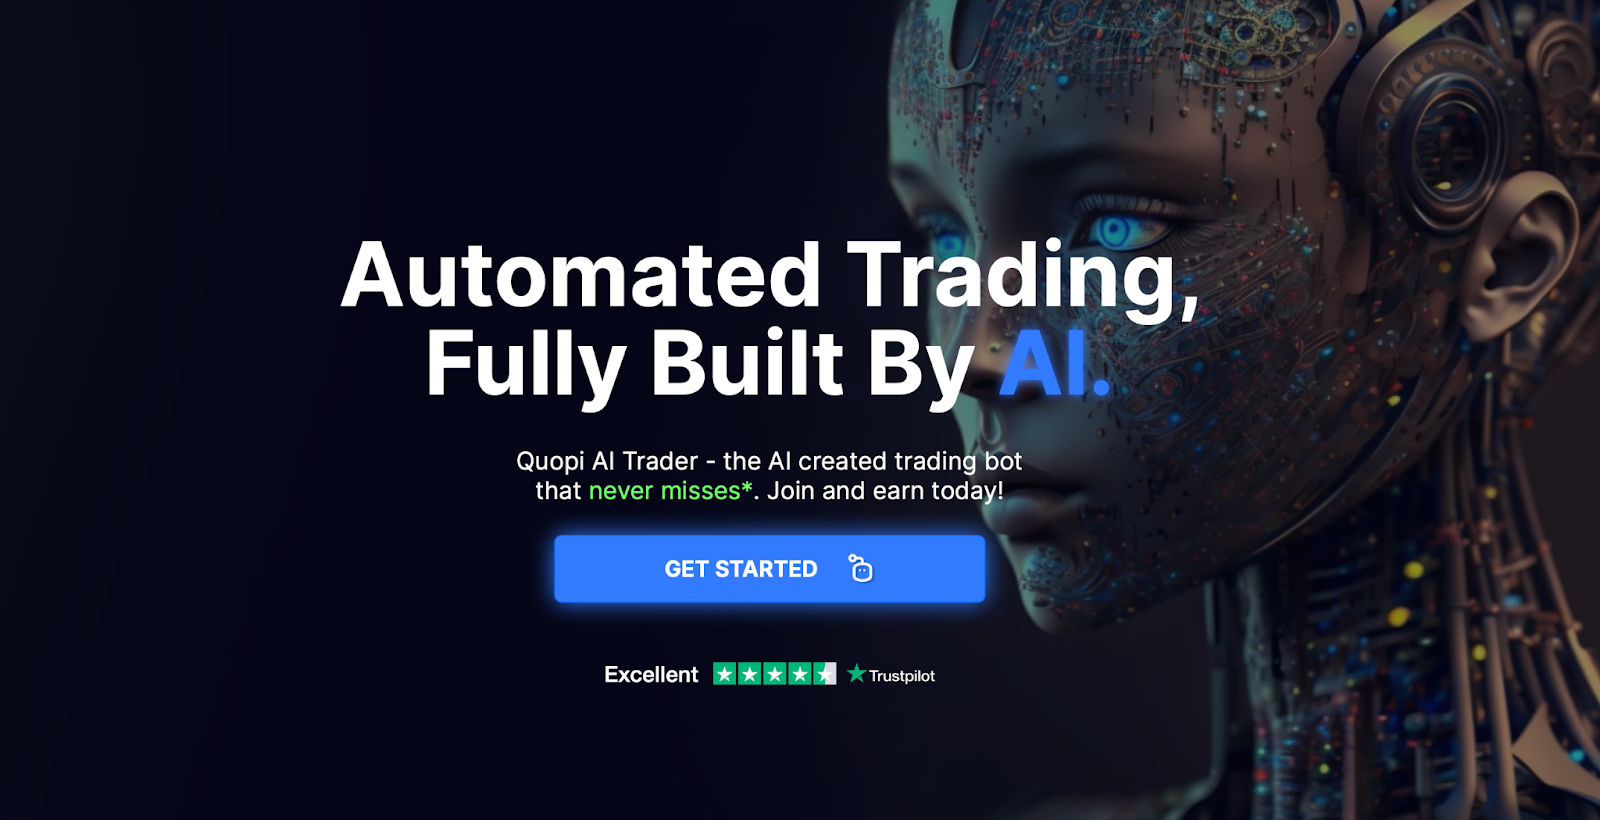 Quopi.AI използва инструменти за анализ на търговията и усъвършенствани алгоритми